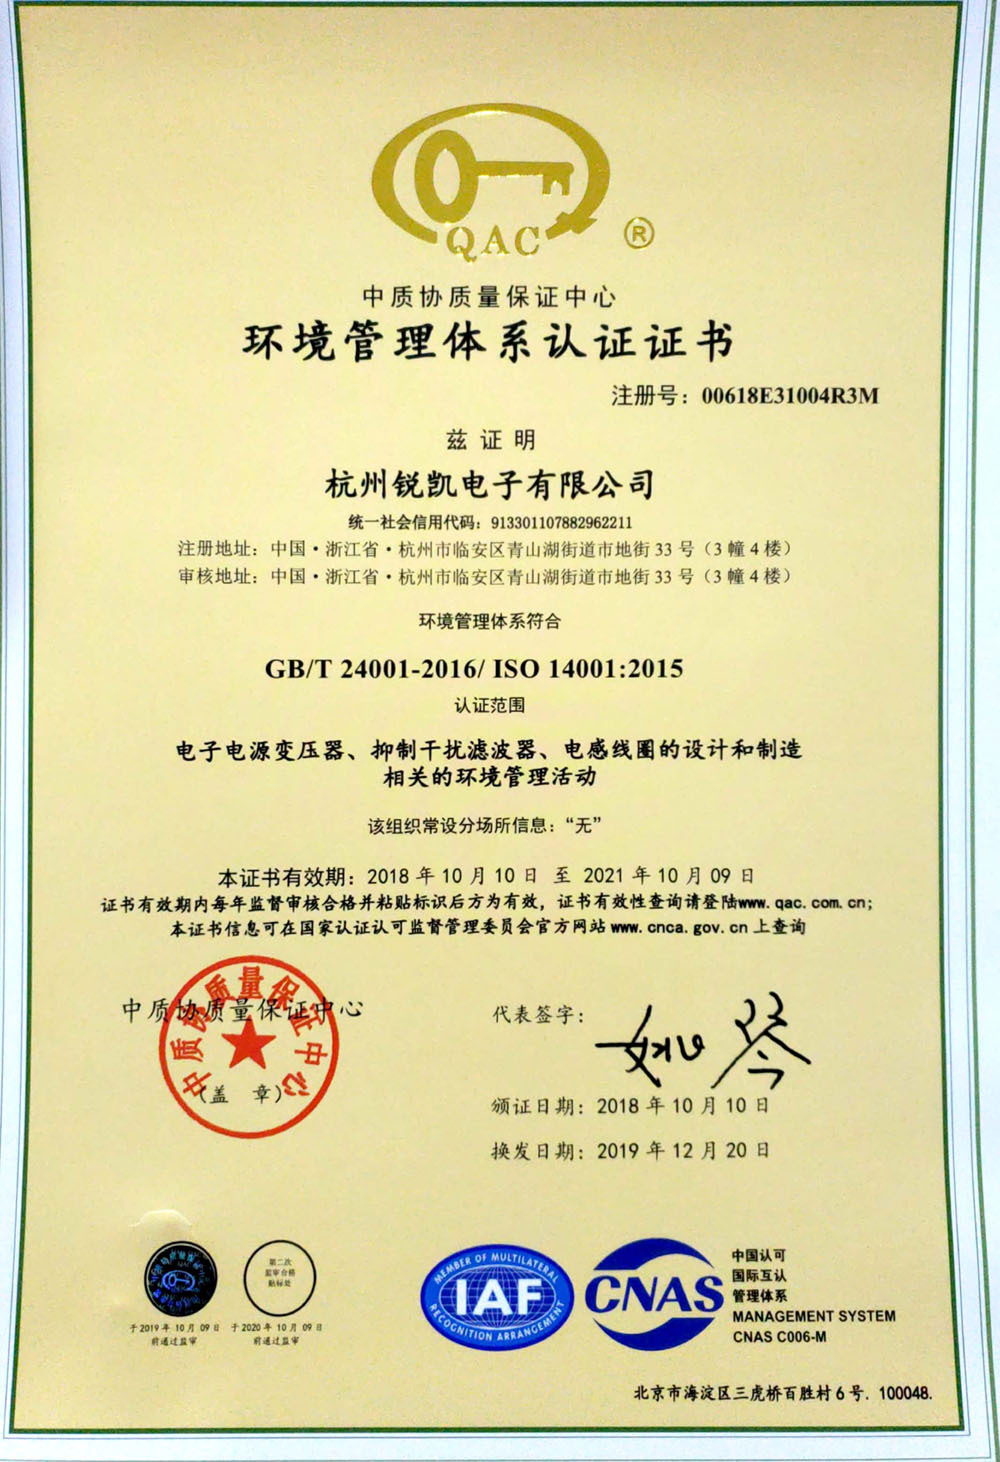 IOS14001 certificate